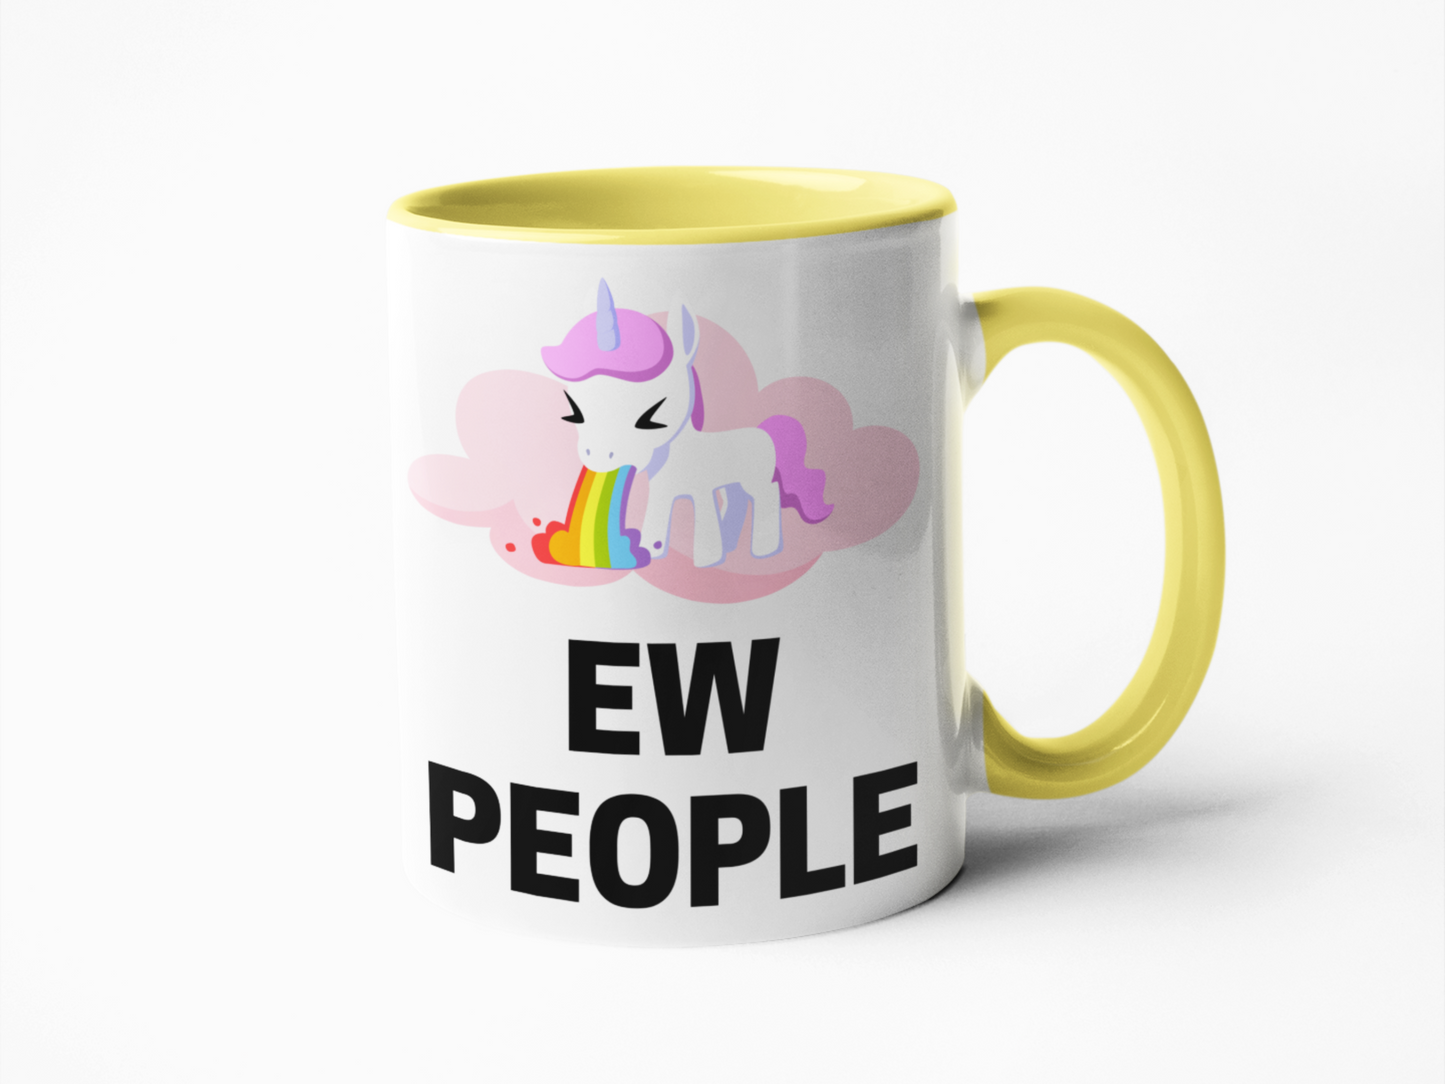 Ew people unicorn theme funny coffee mug